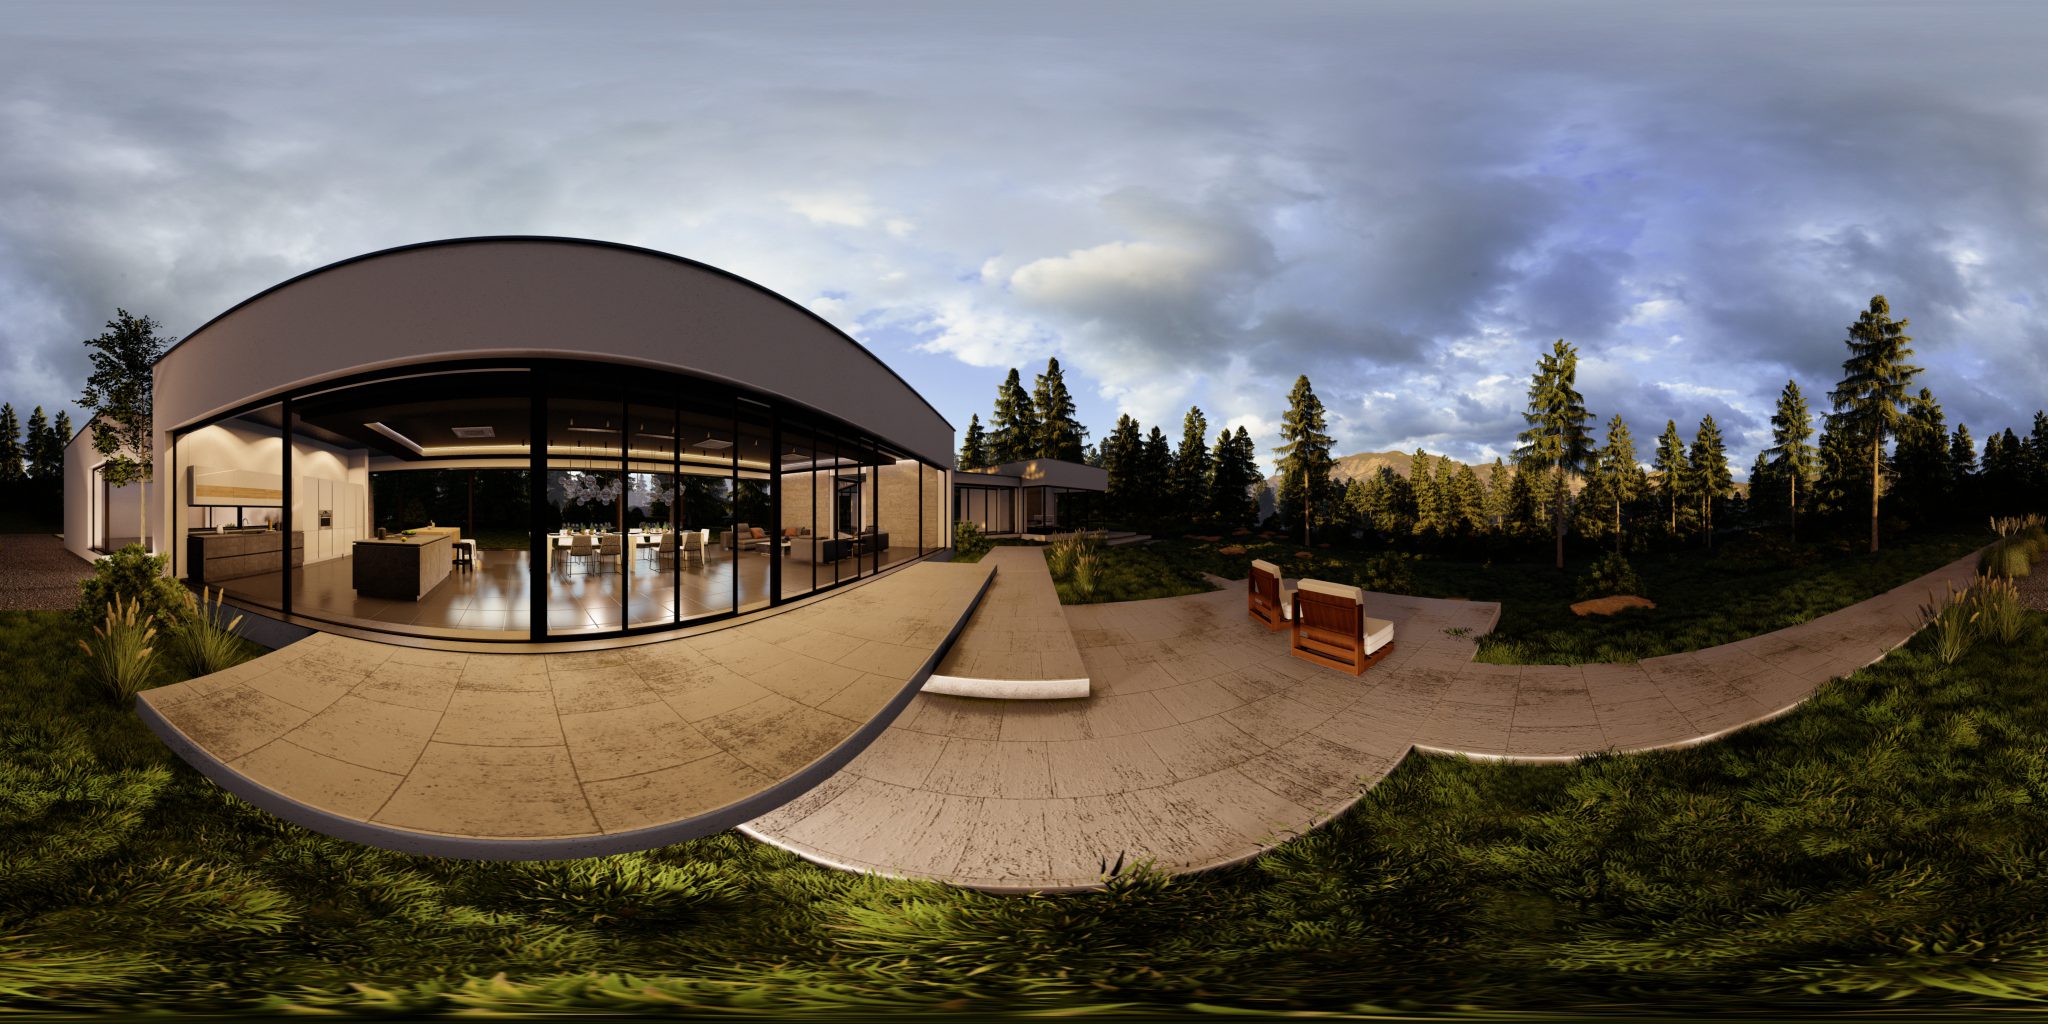 wizualizacja sferyczna budynku domu jednorodzinnego wizualizacje panoramiczne